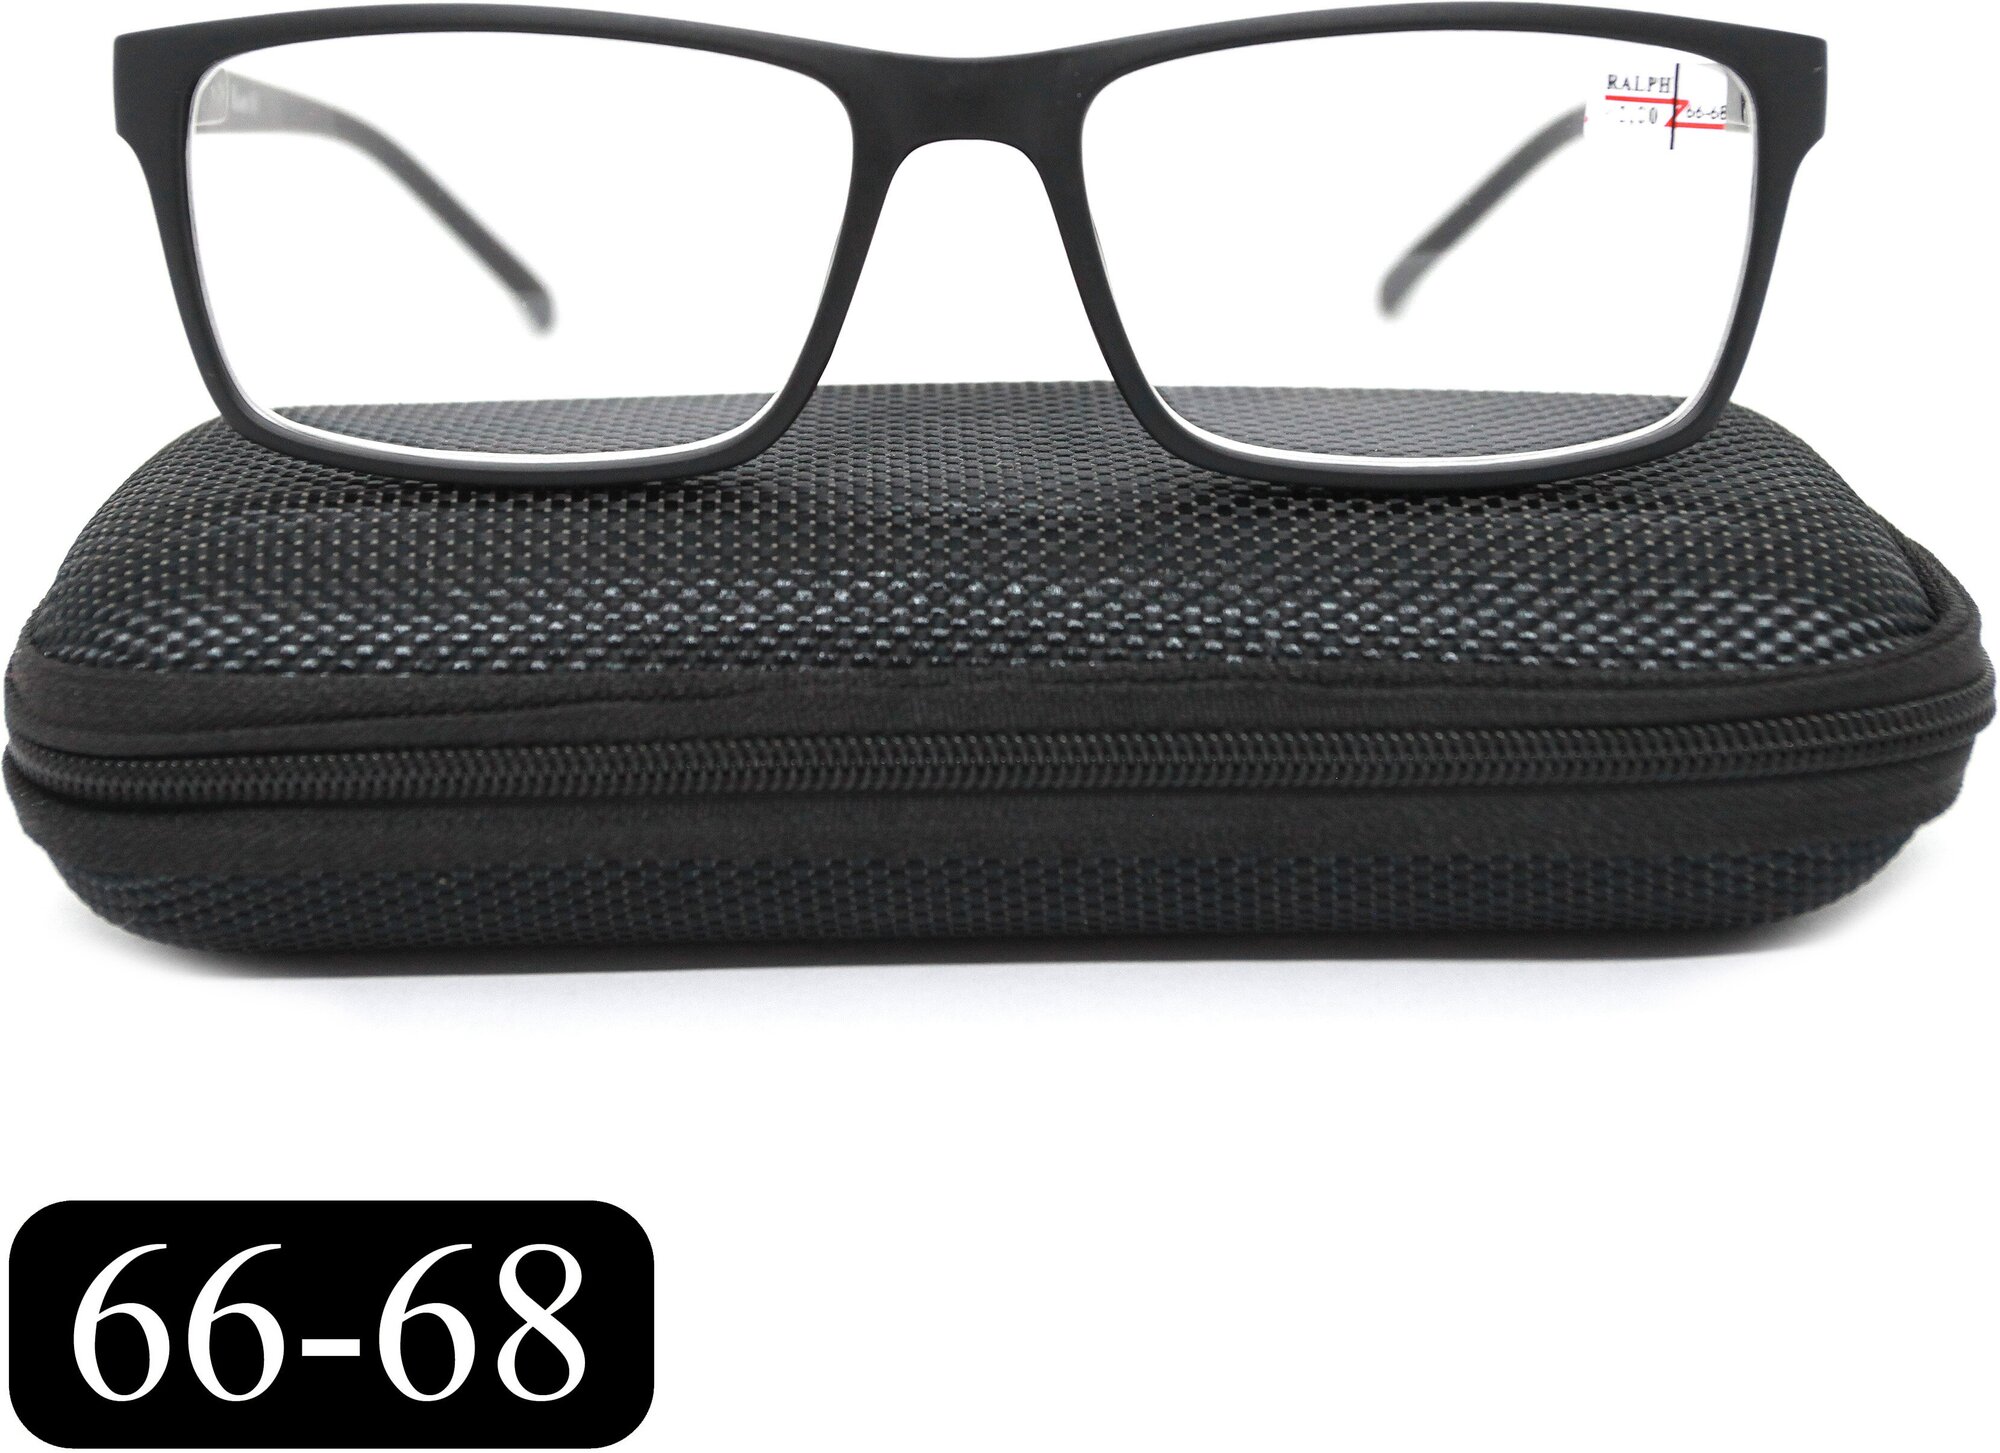 Готовые очки РЦ 66-68 для зрения-чтения (+2.50) RALPH 0491-C1, с футляром, цвет черный, линзы пластик